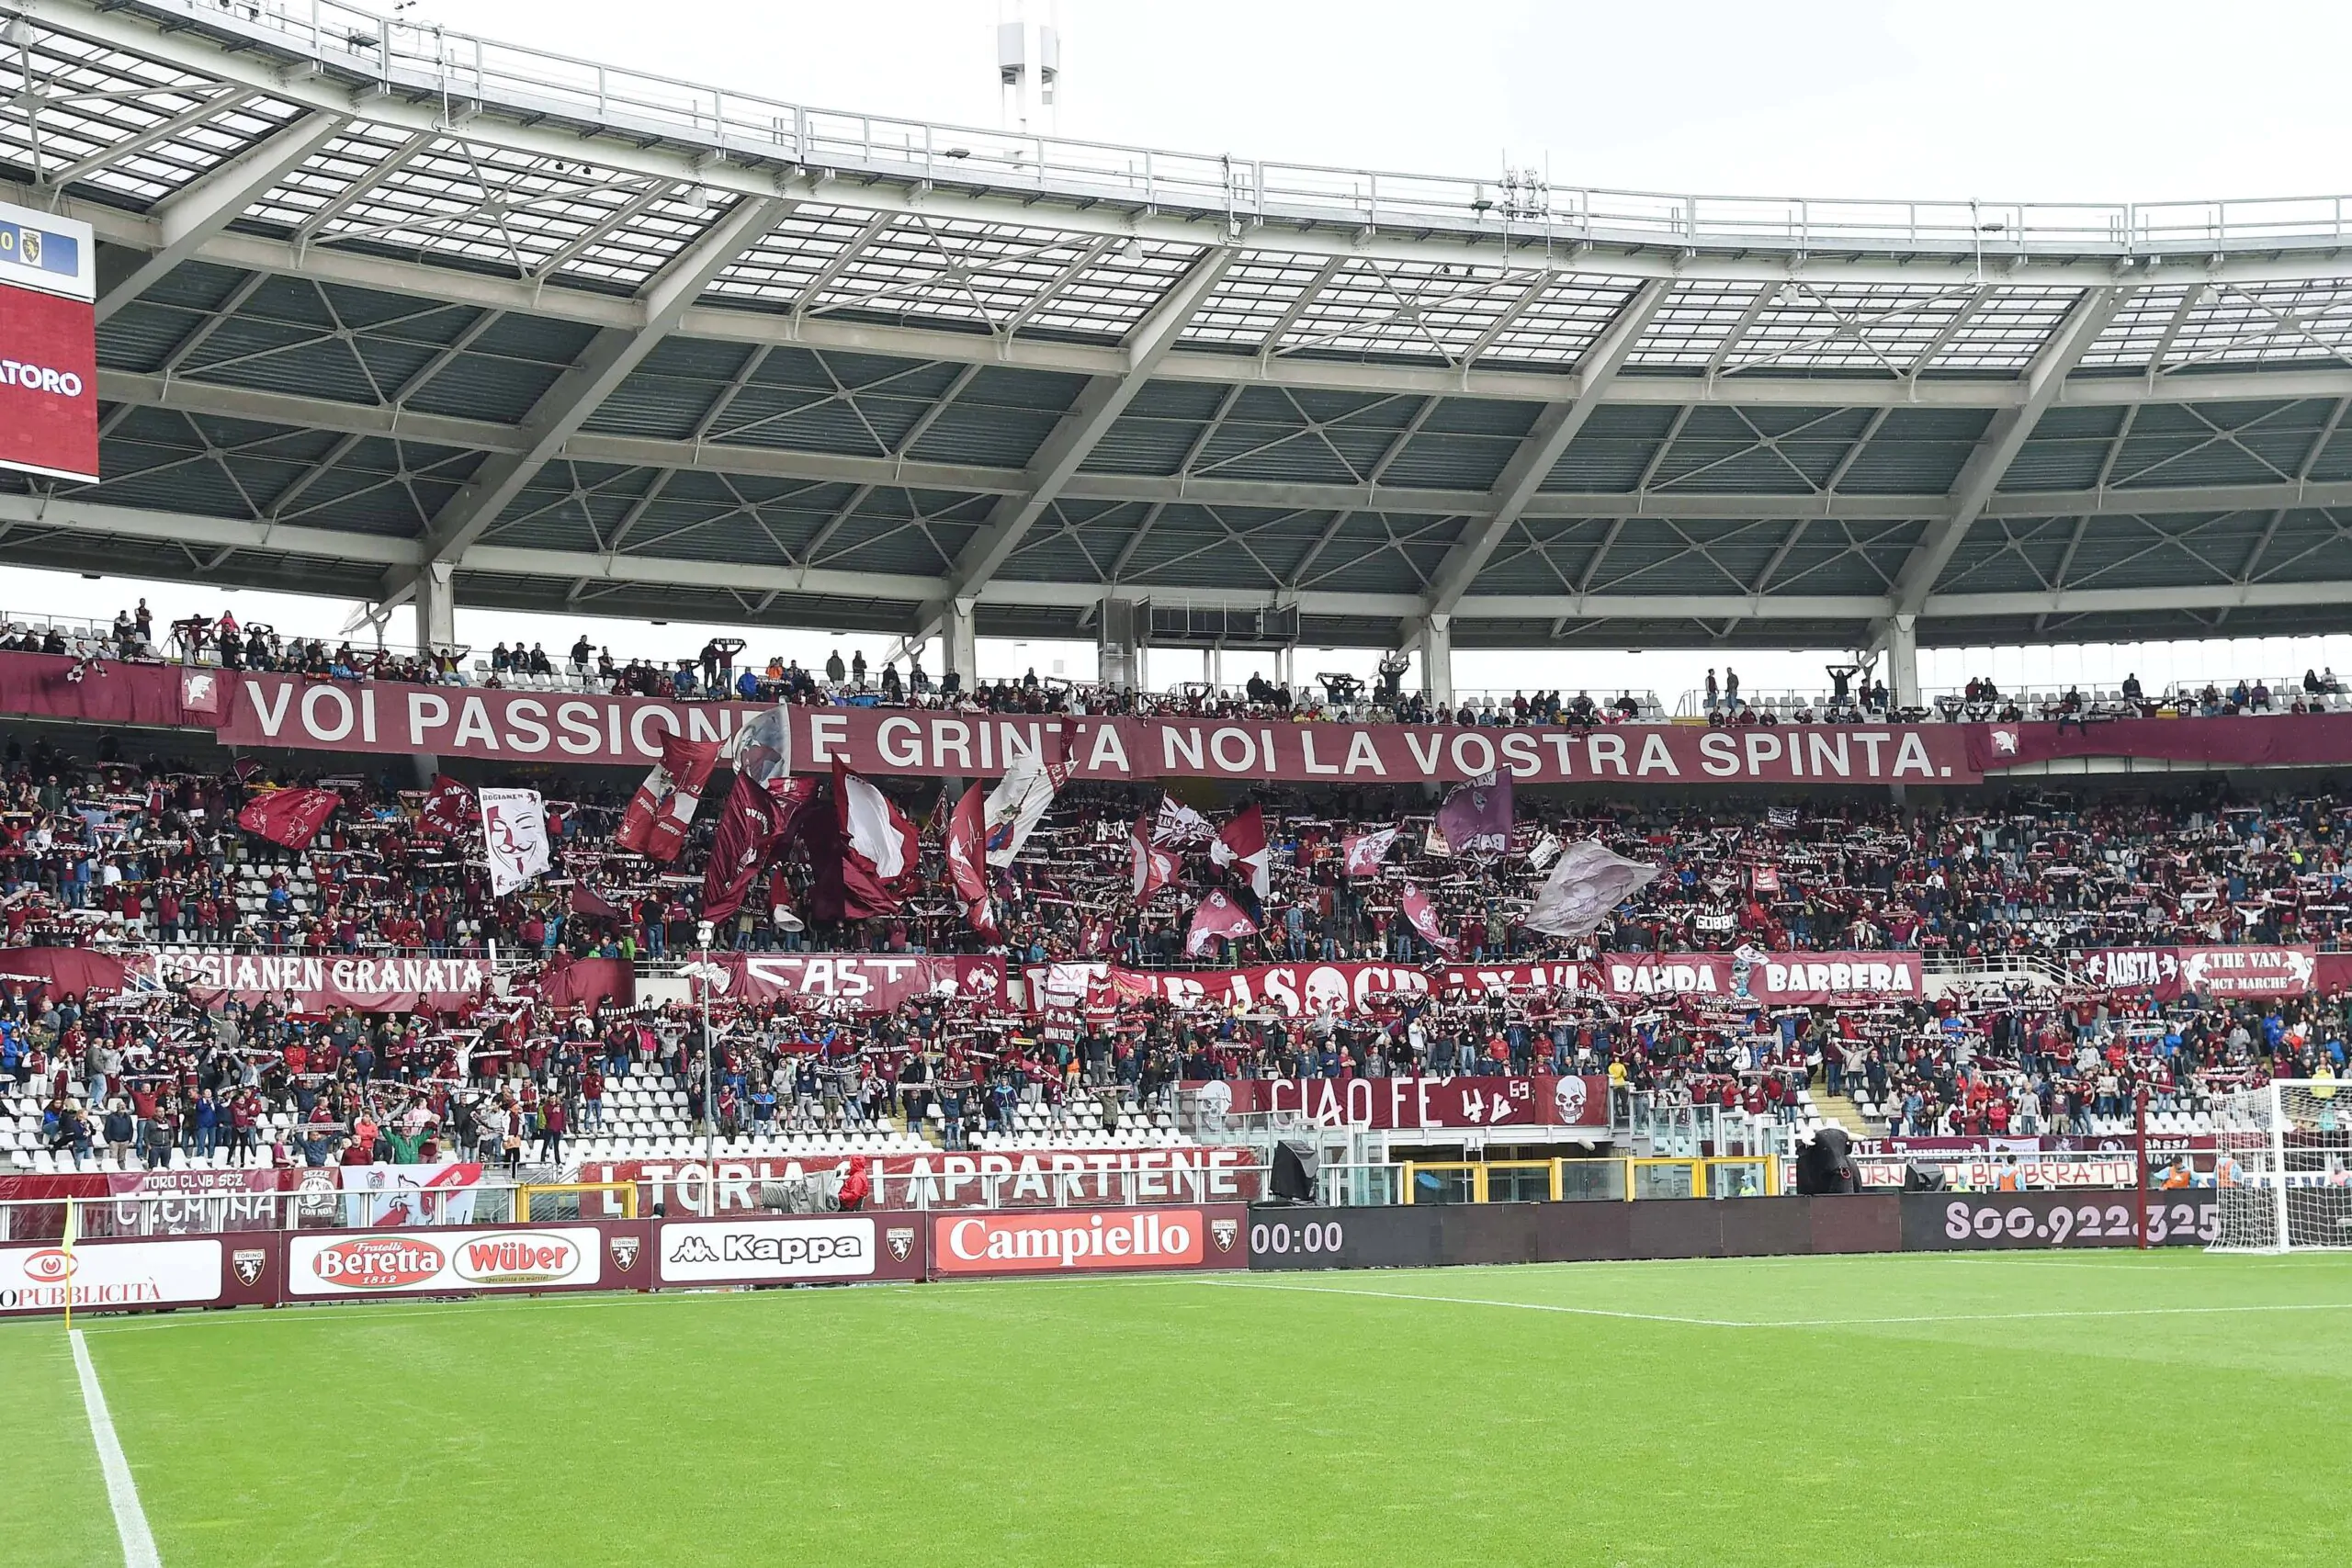 Torino, che dichiarazioni di Bruno! “Spero che i tifosi entrino in campo per protestare contro Cairo”